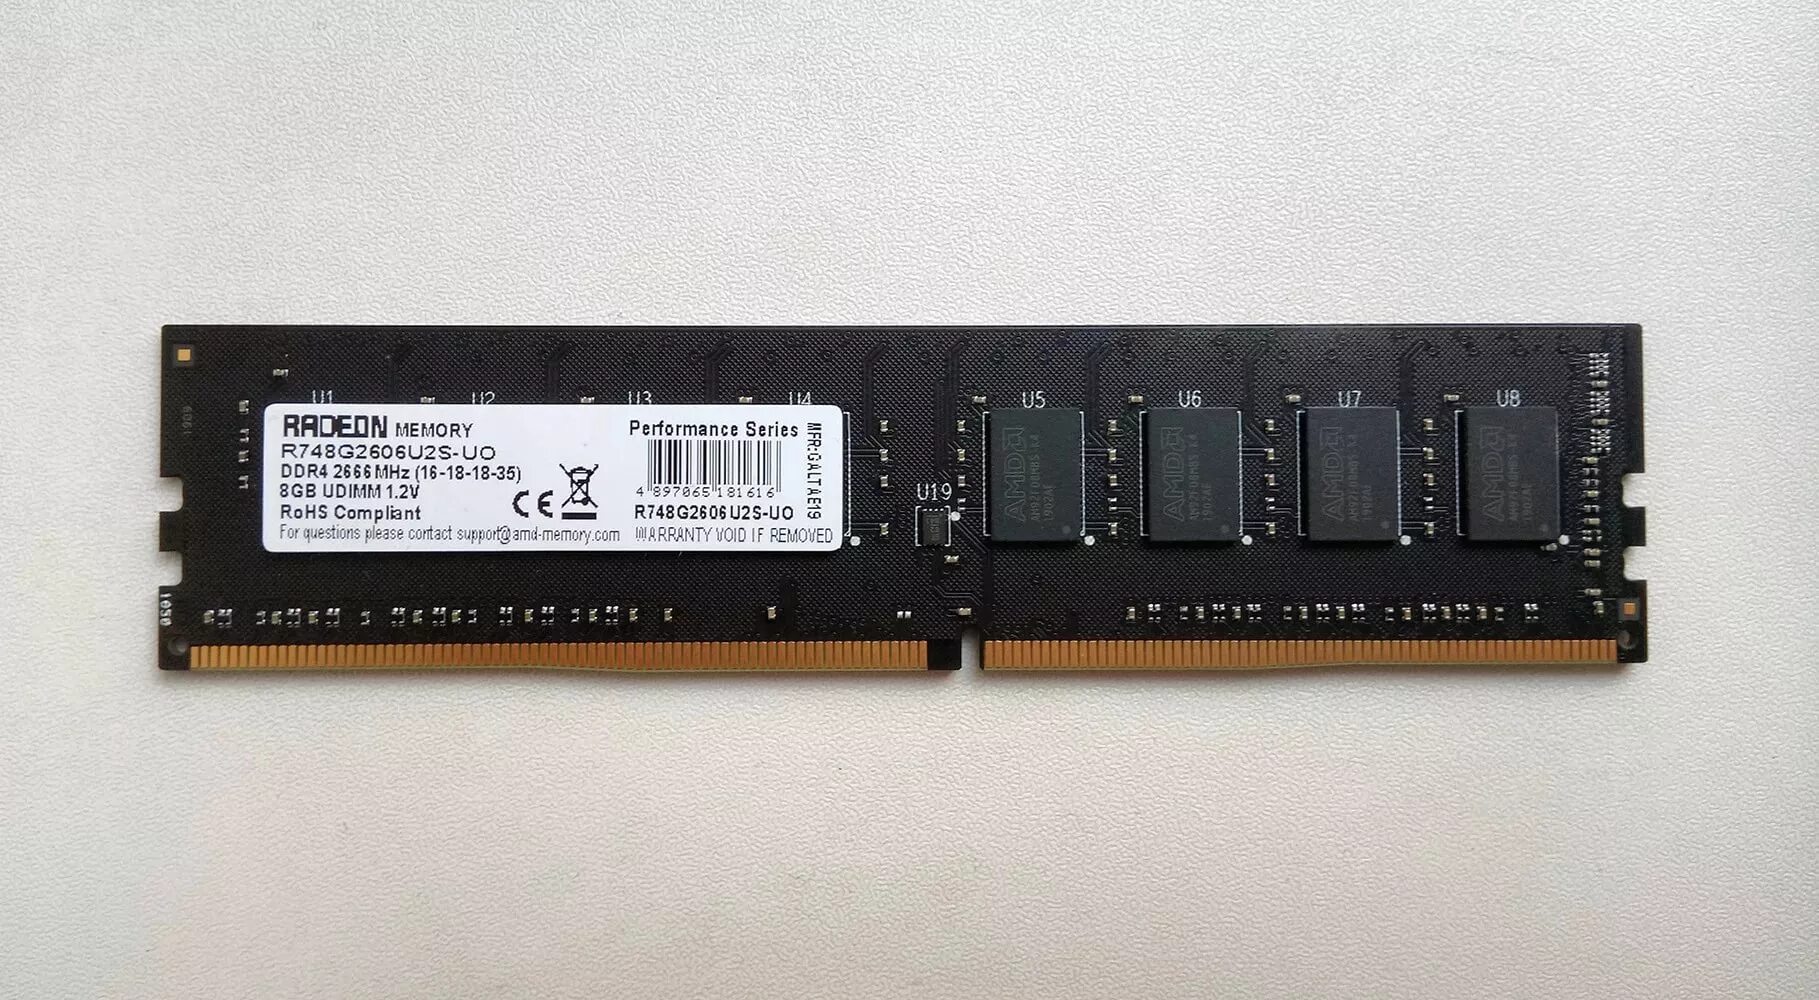 8gb 2666. Оперативная память AMD ddr4 8gb 2666mhz DIMM. Оперативная память Radeon Memory ddr4 8gb 2666mhz r748g2606u2s. AMD ddr4 8gb 2666mhz. AMD DIMM ddr4 8gb 2666mhz.